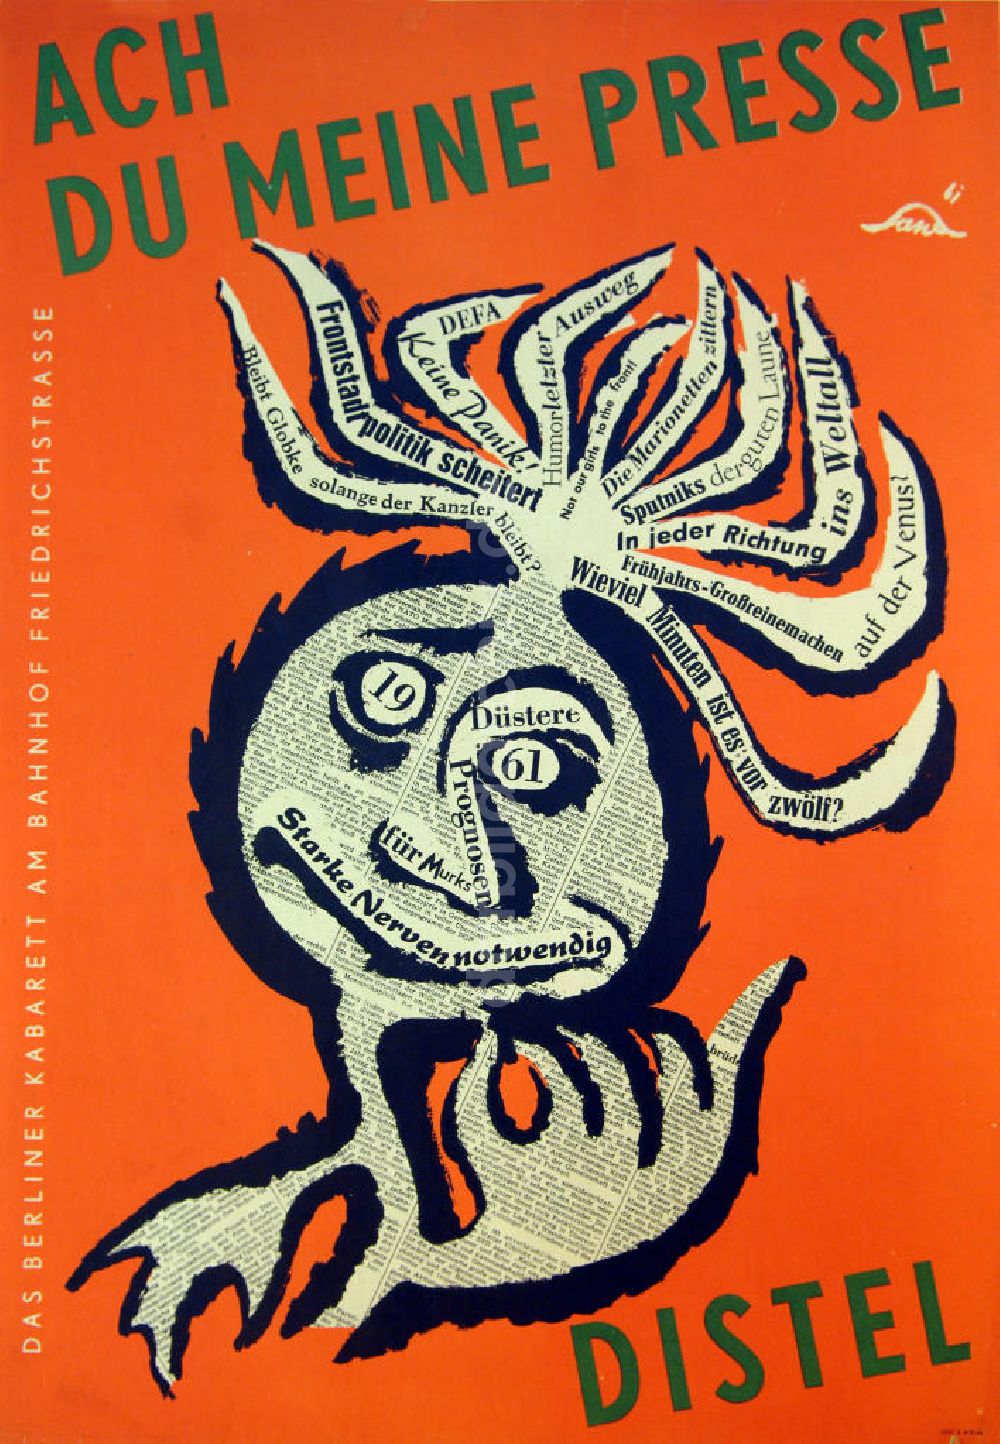 Berlin: Plakat von Herbert Sandberg Ach du meine Presse aus dem Jahr 1961